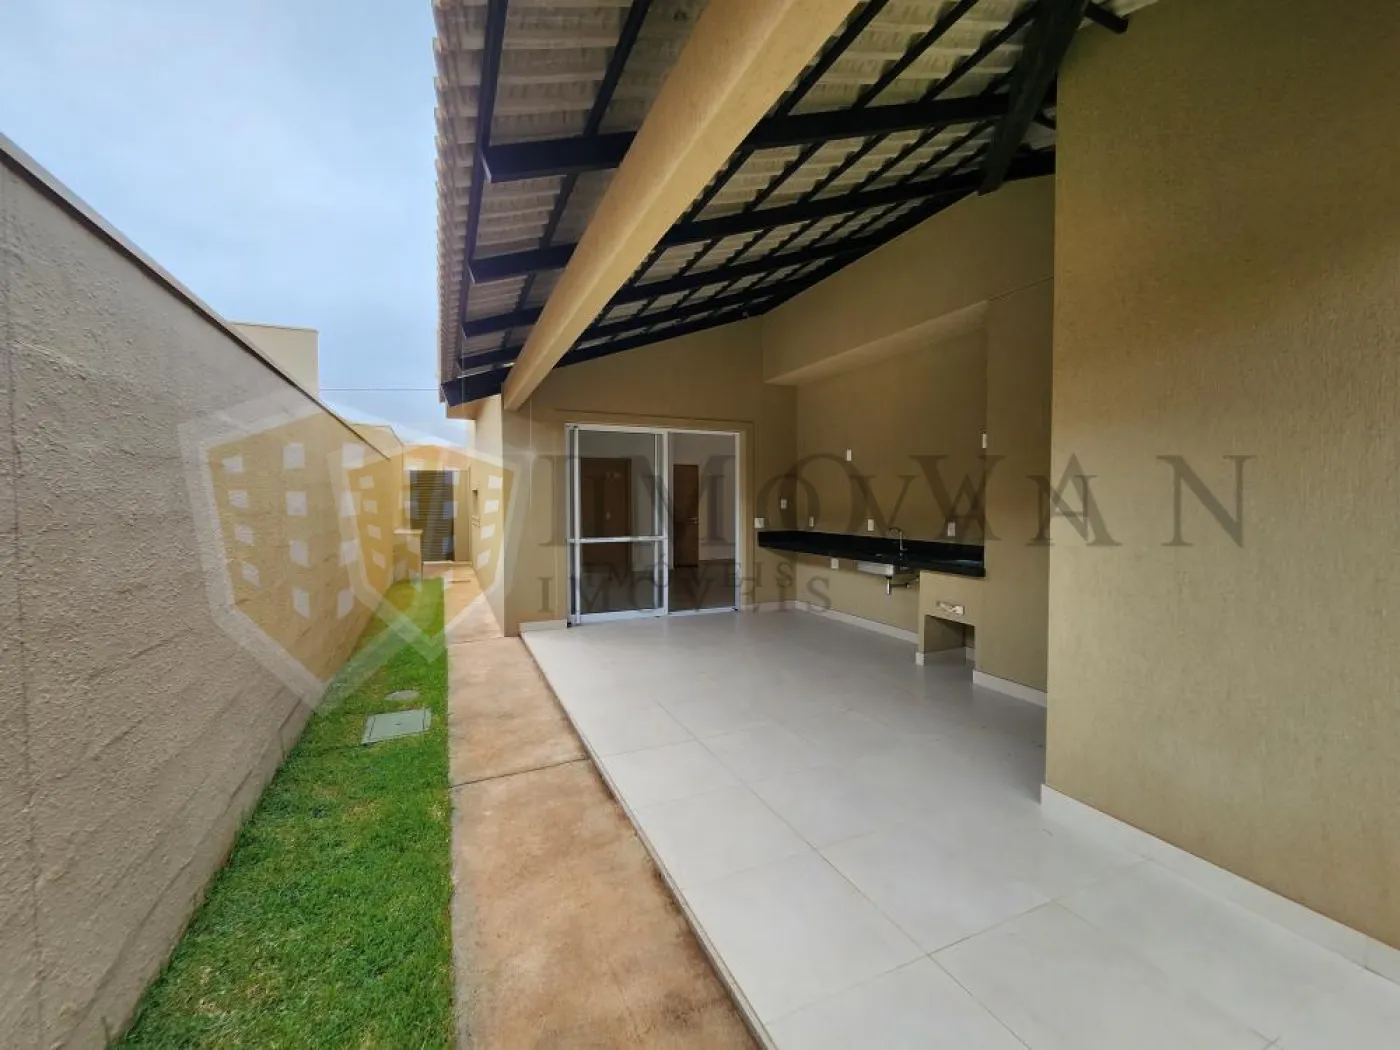 Comprar Casa / Condomínio em Cravinhos R$ 980.000,00 - Foto 12